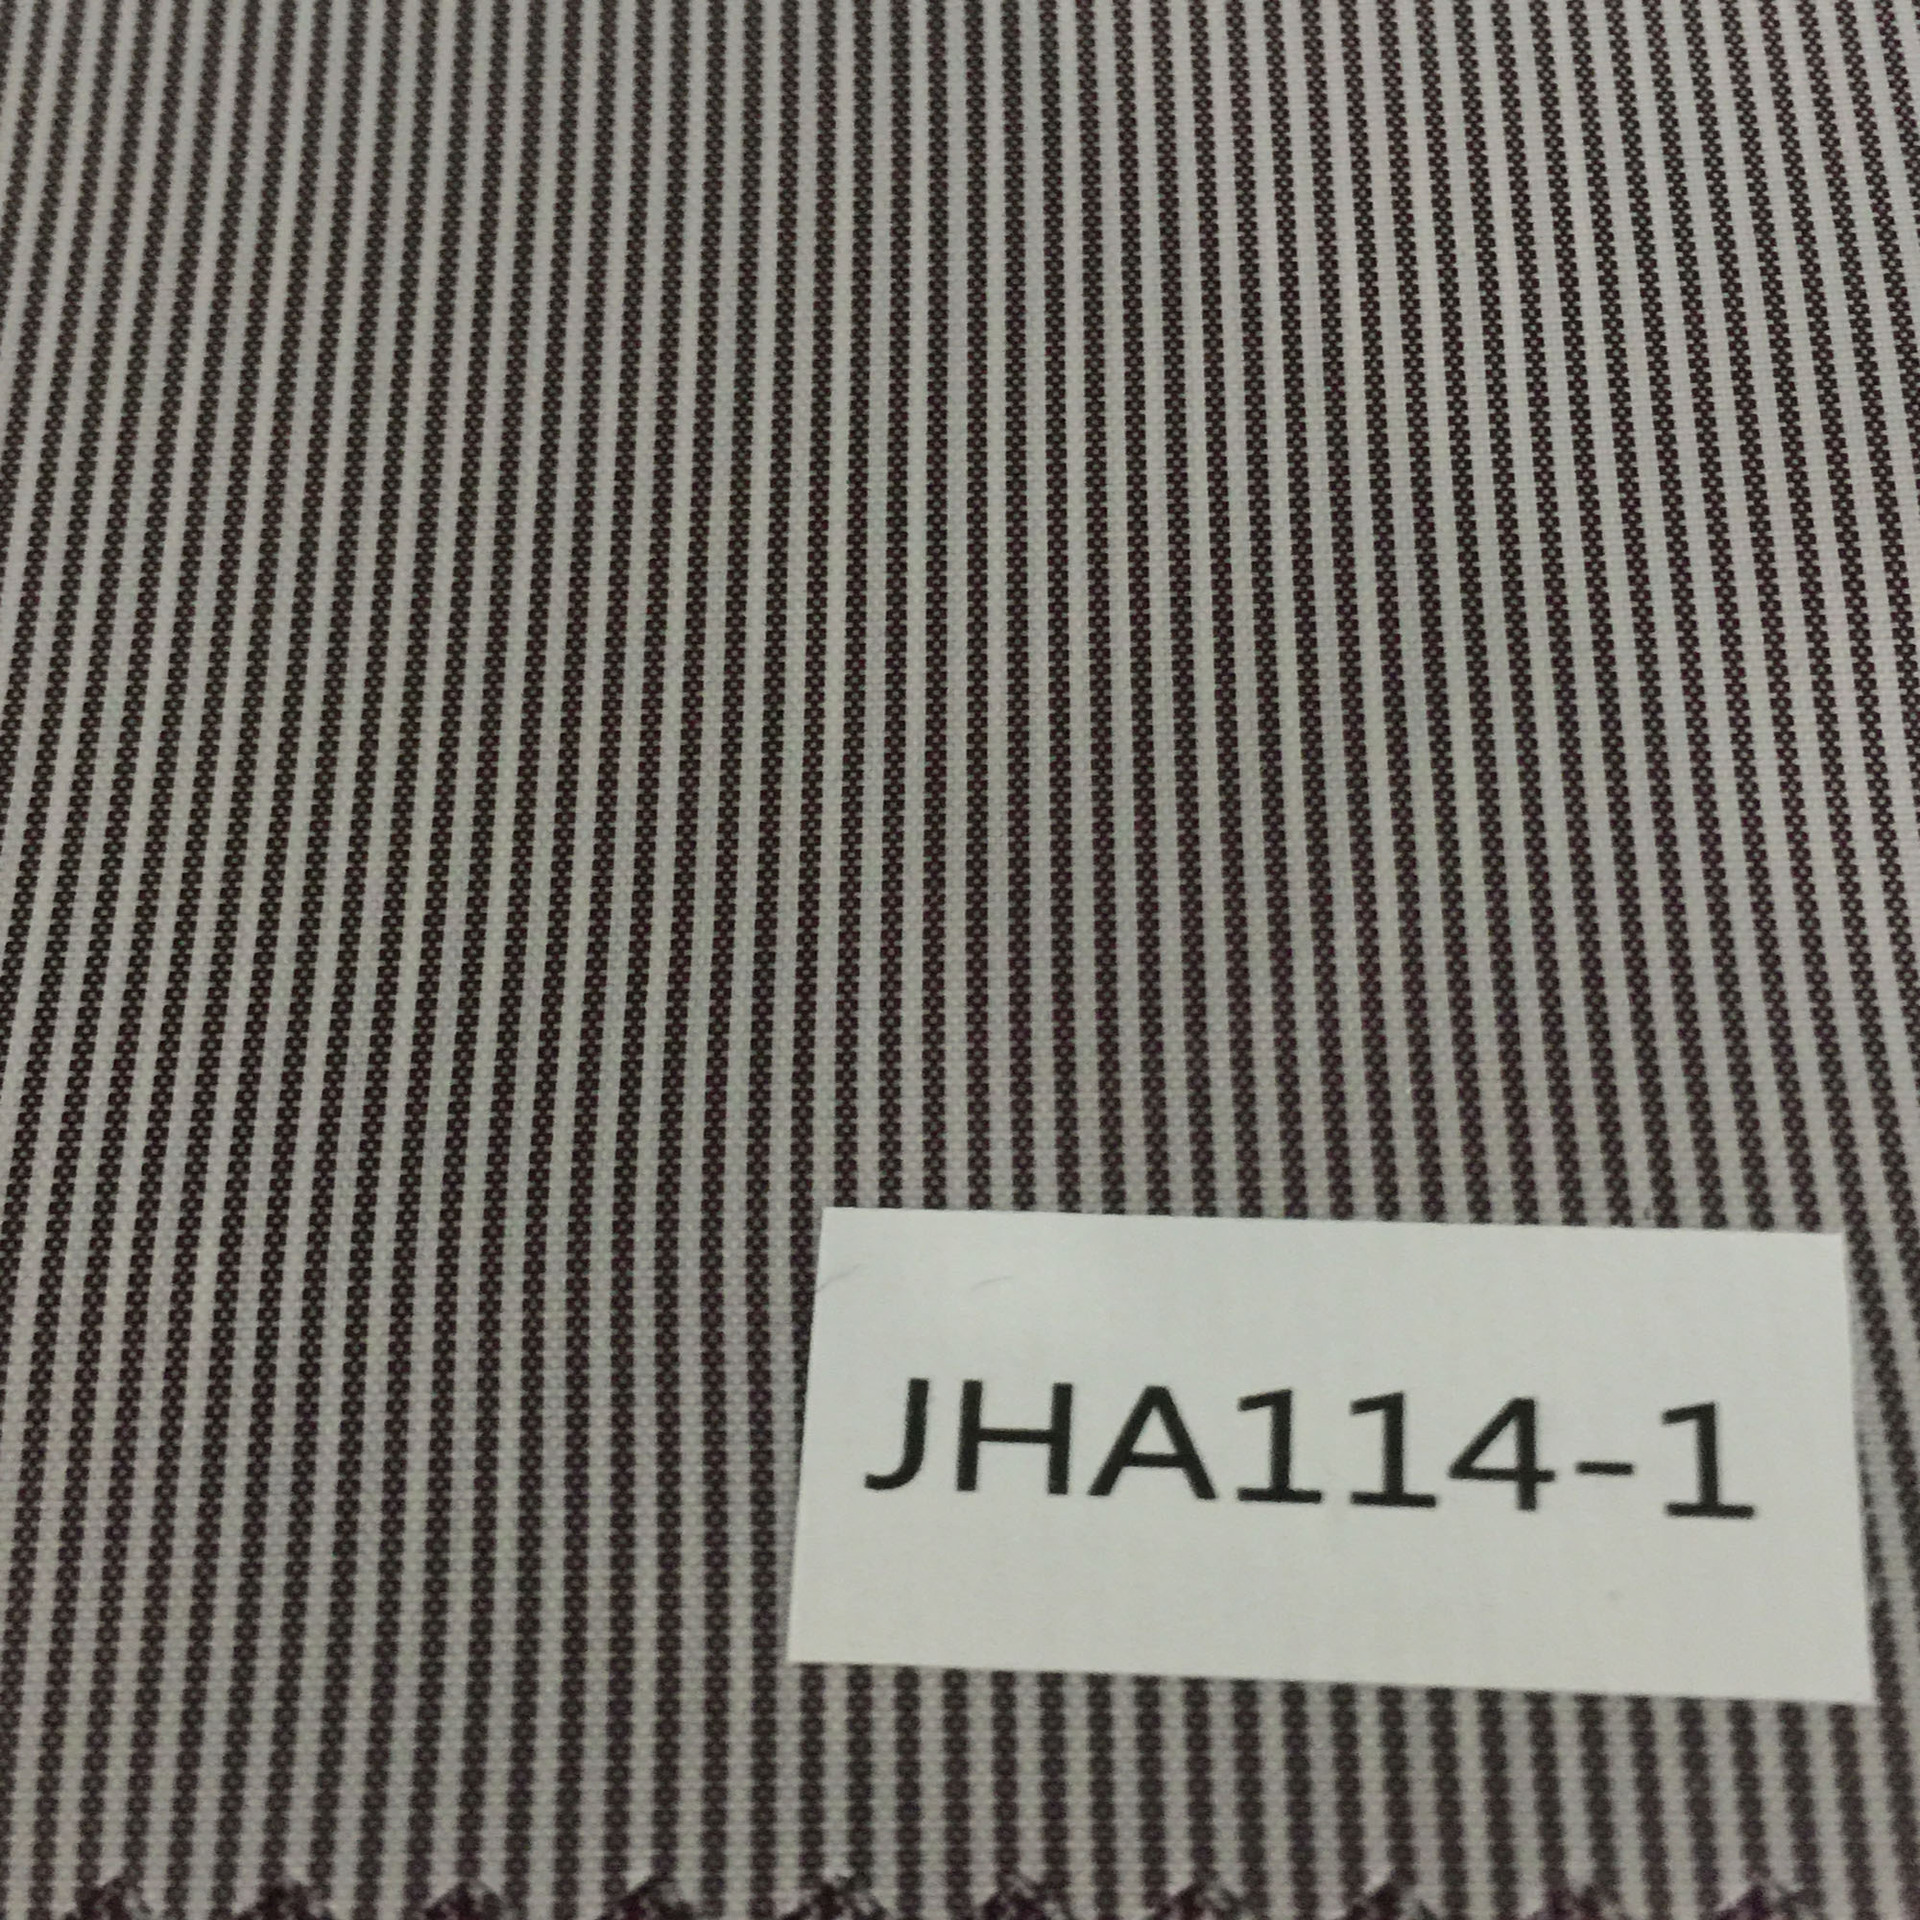 JHA114-1